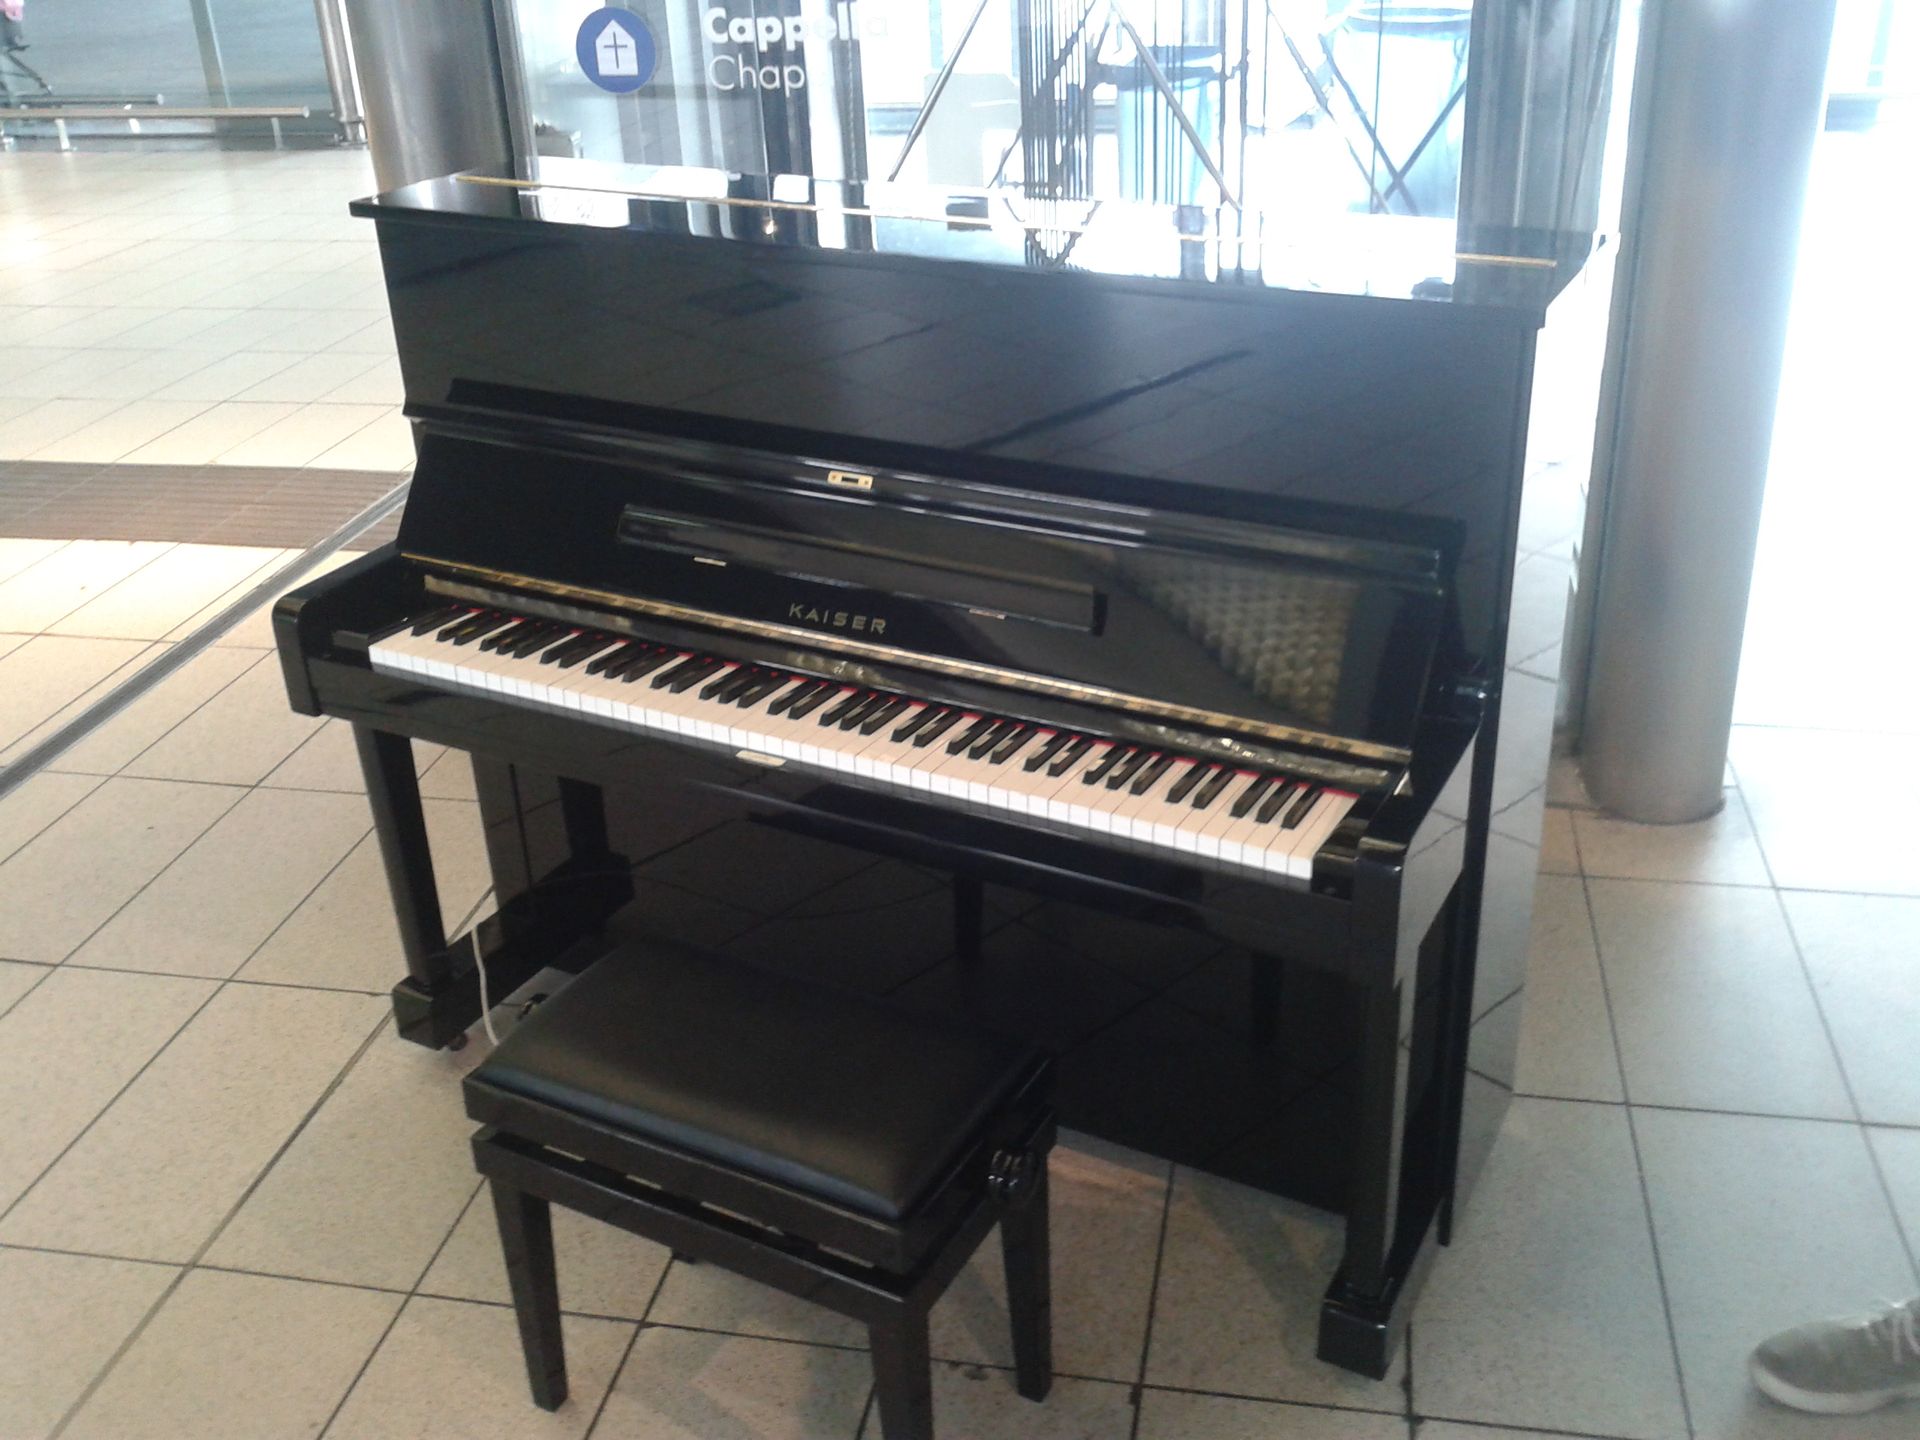  Il “pianoforte condiviso” di Napoli Centrale riparato in tempi record